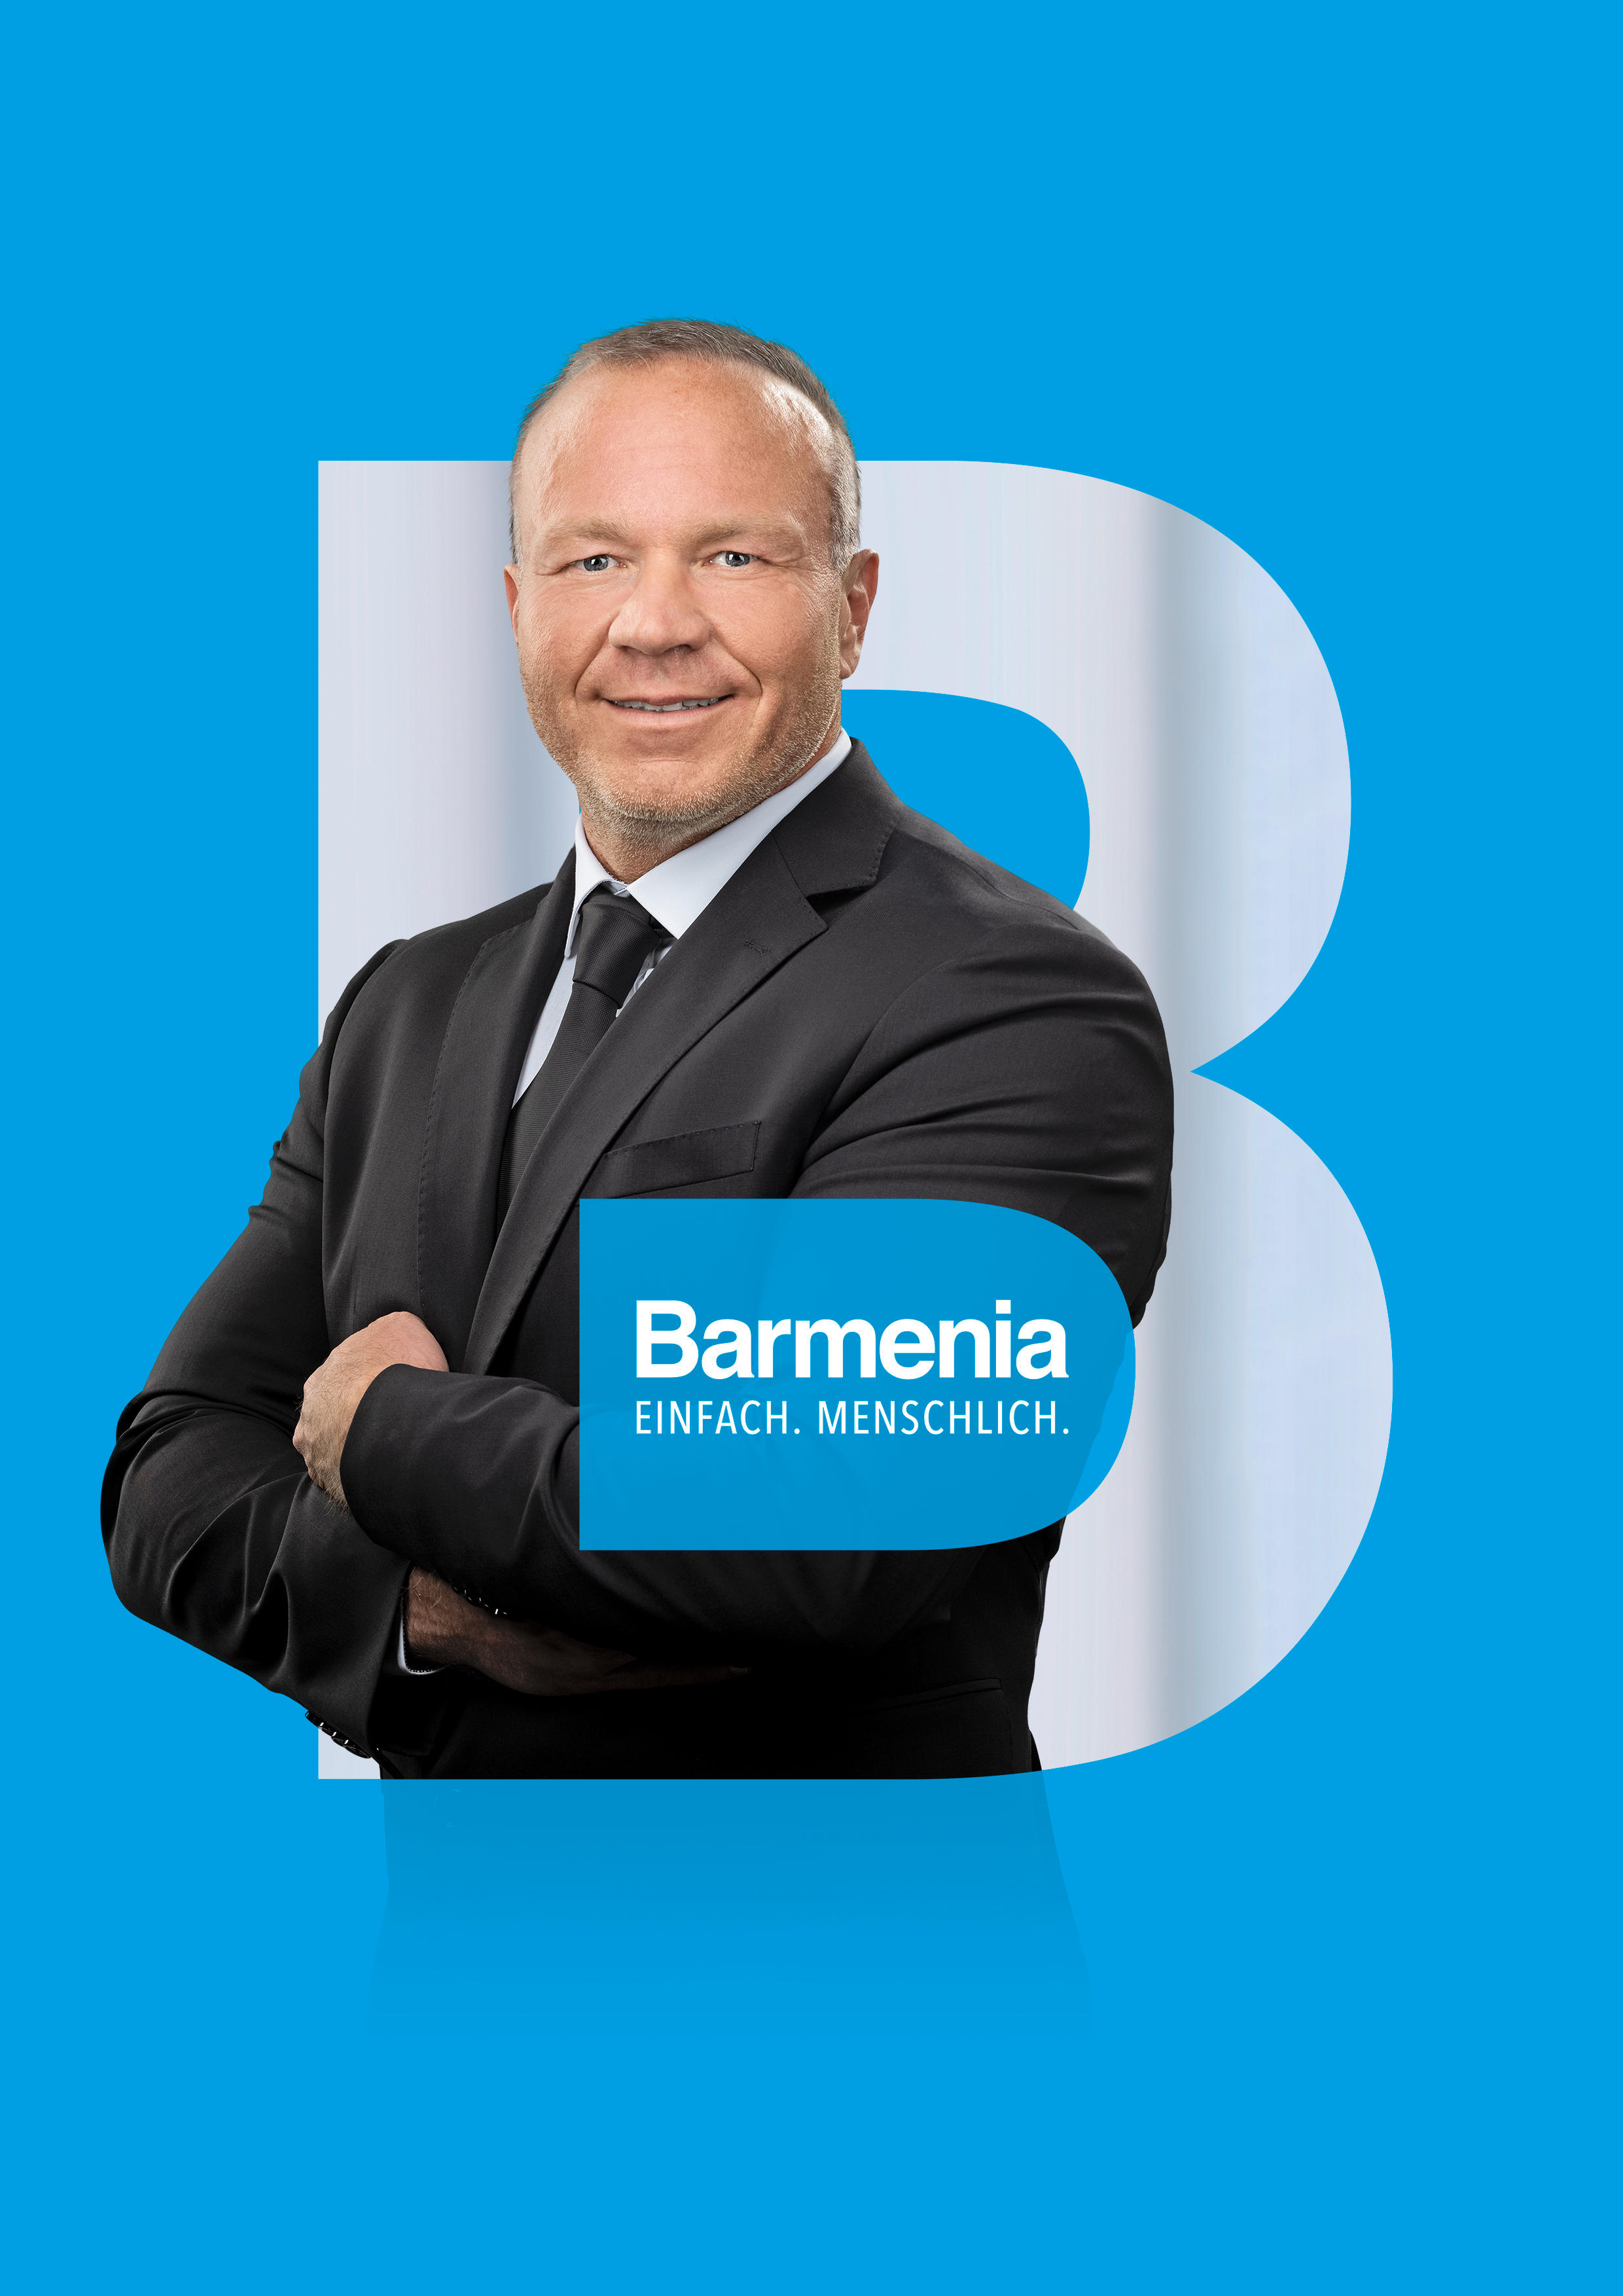  Becker Finanz GmbH & Co. KG. Ihr Ansprechpartner für die Barmenia Versicherung in Horhausen (Westerwald).